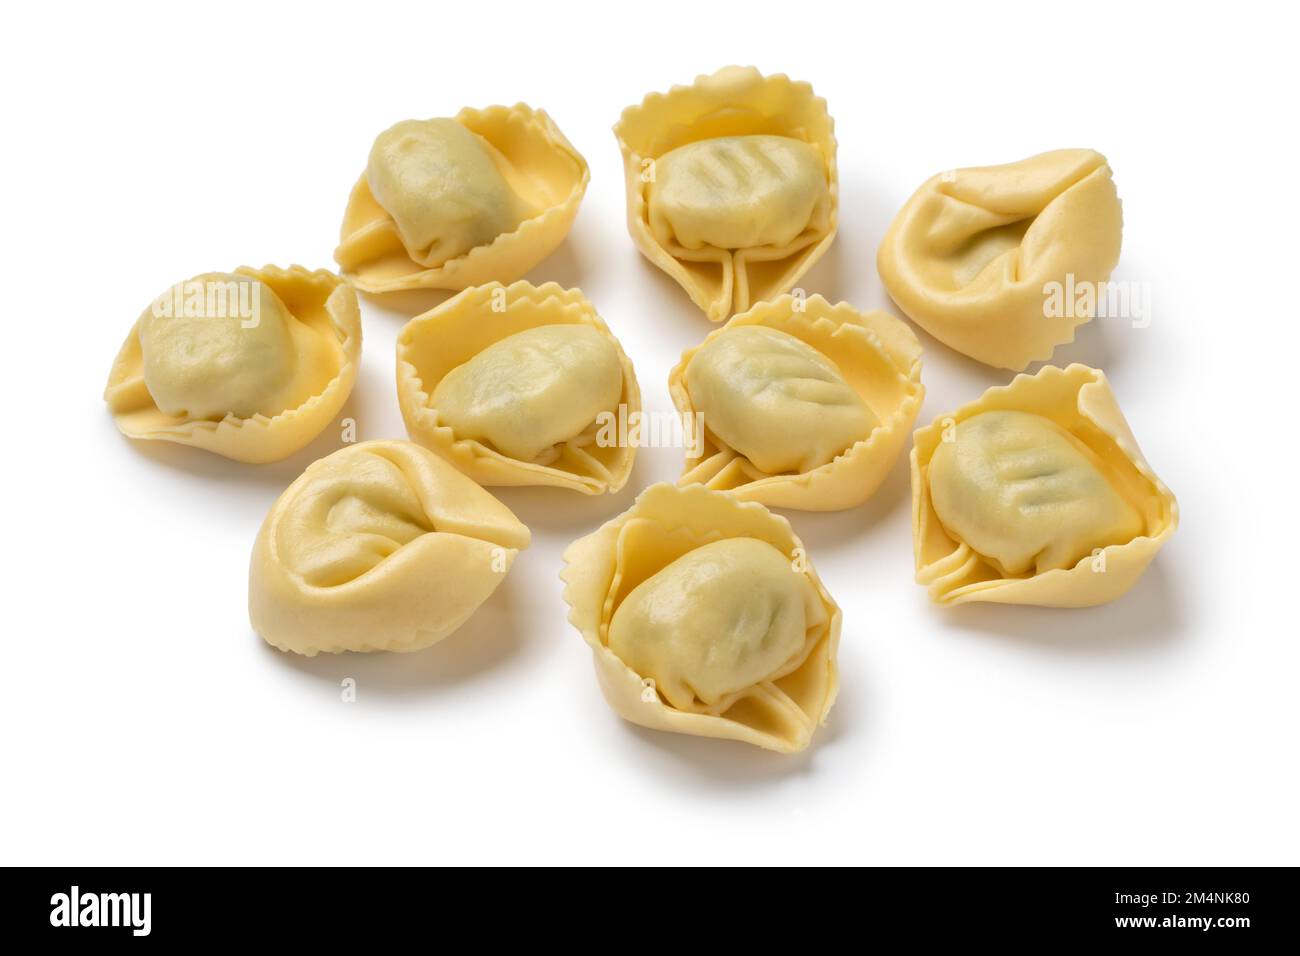 Mucchio di tortellini italiani tradizionali freschi ripieni di ricotta e spinaci primo piano isolati su fondo bianco Foto Stock